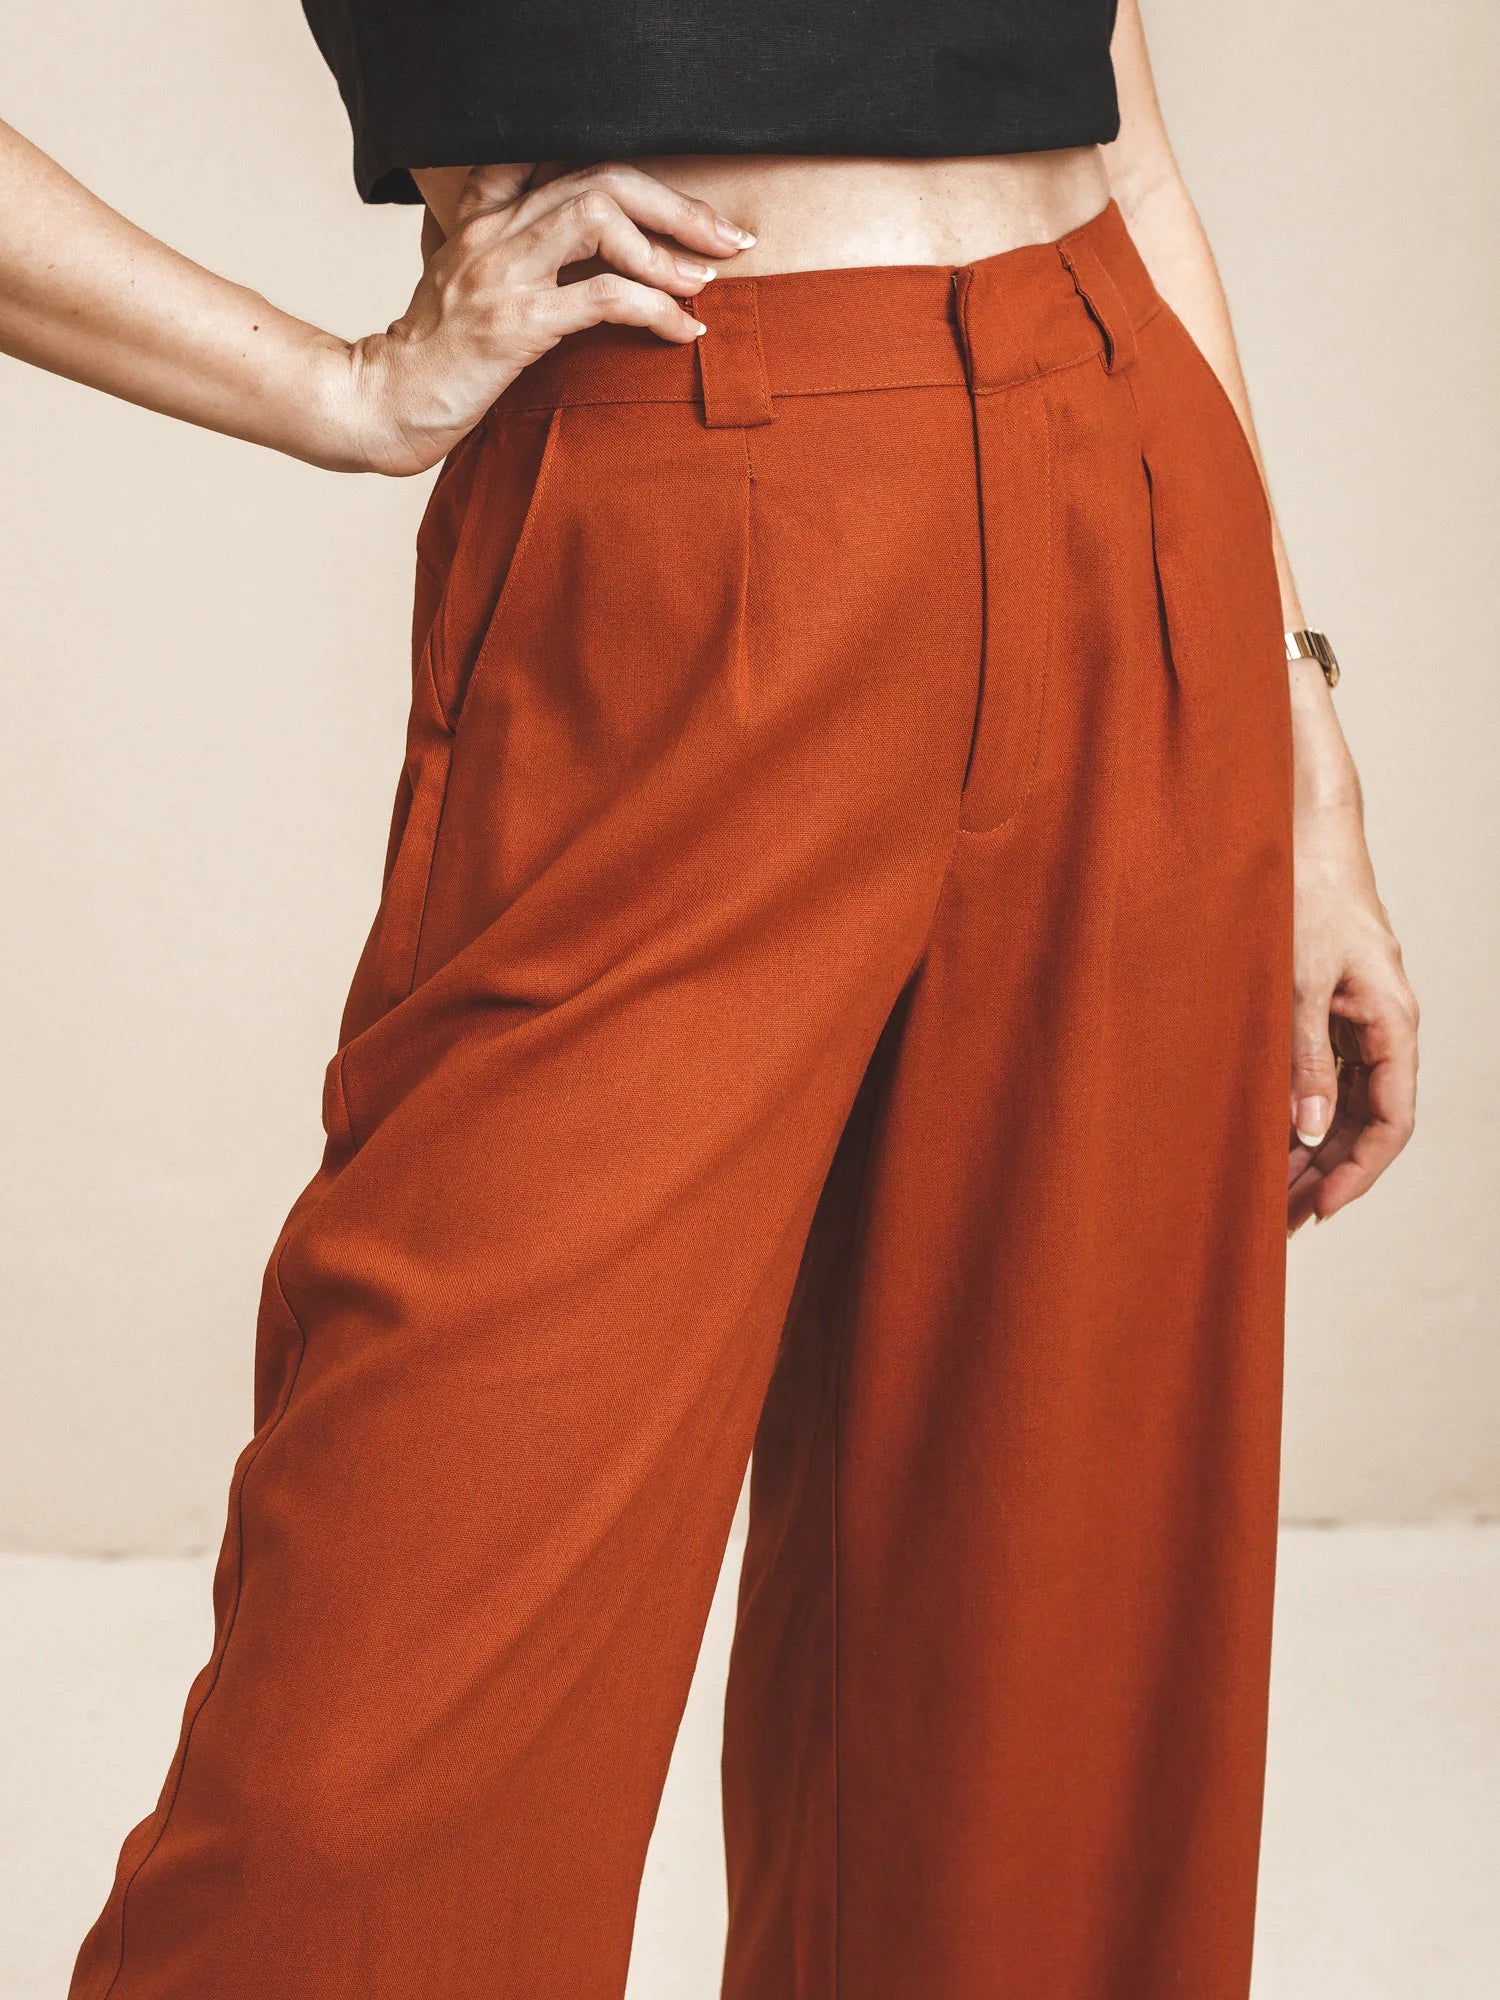 Calça Pantalona de Alfaiataria em Linho e Viscose FSC™ Marrom Terracota. Compre online moda sustentável e atemporal na Minimadeia. Roupas femininas estilosas, básicas e sustentáveis. Foto produto 07